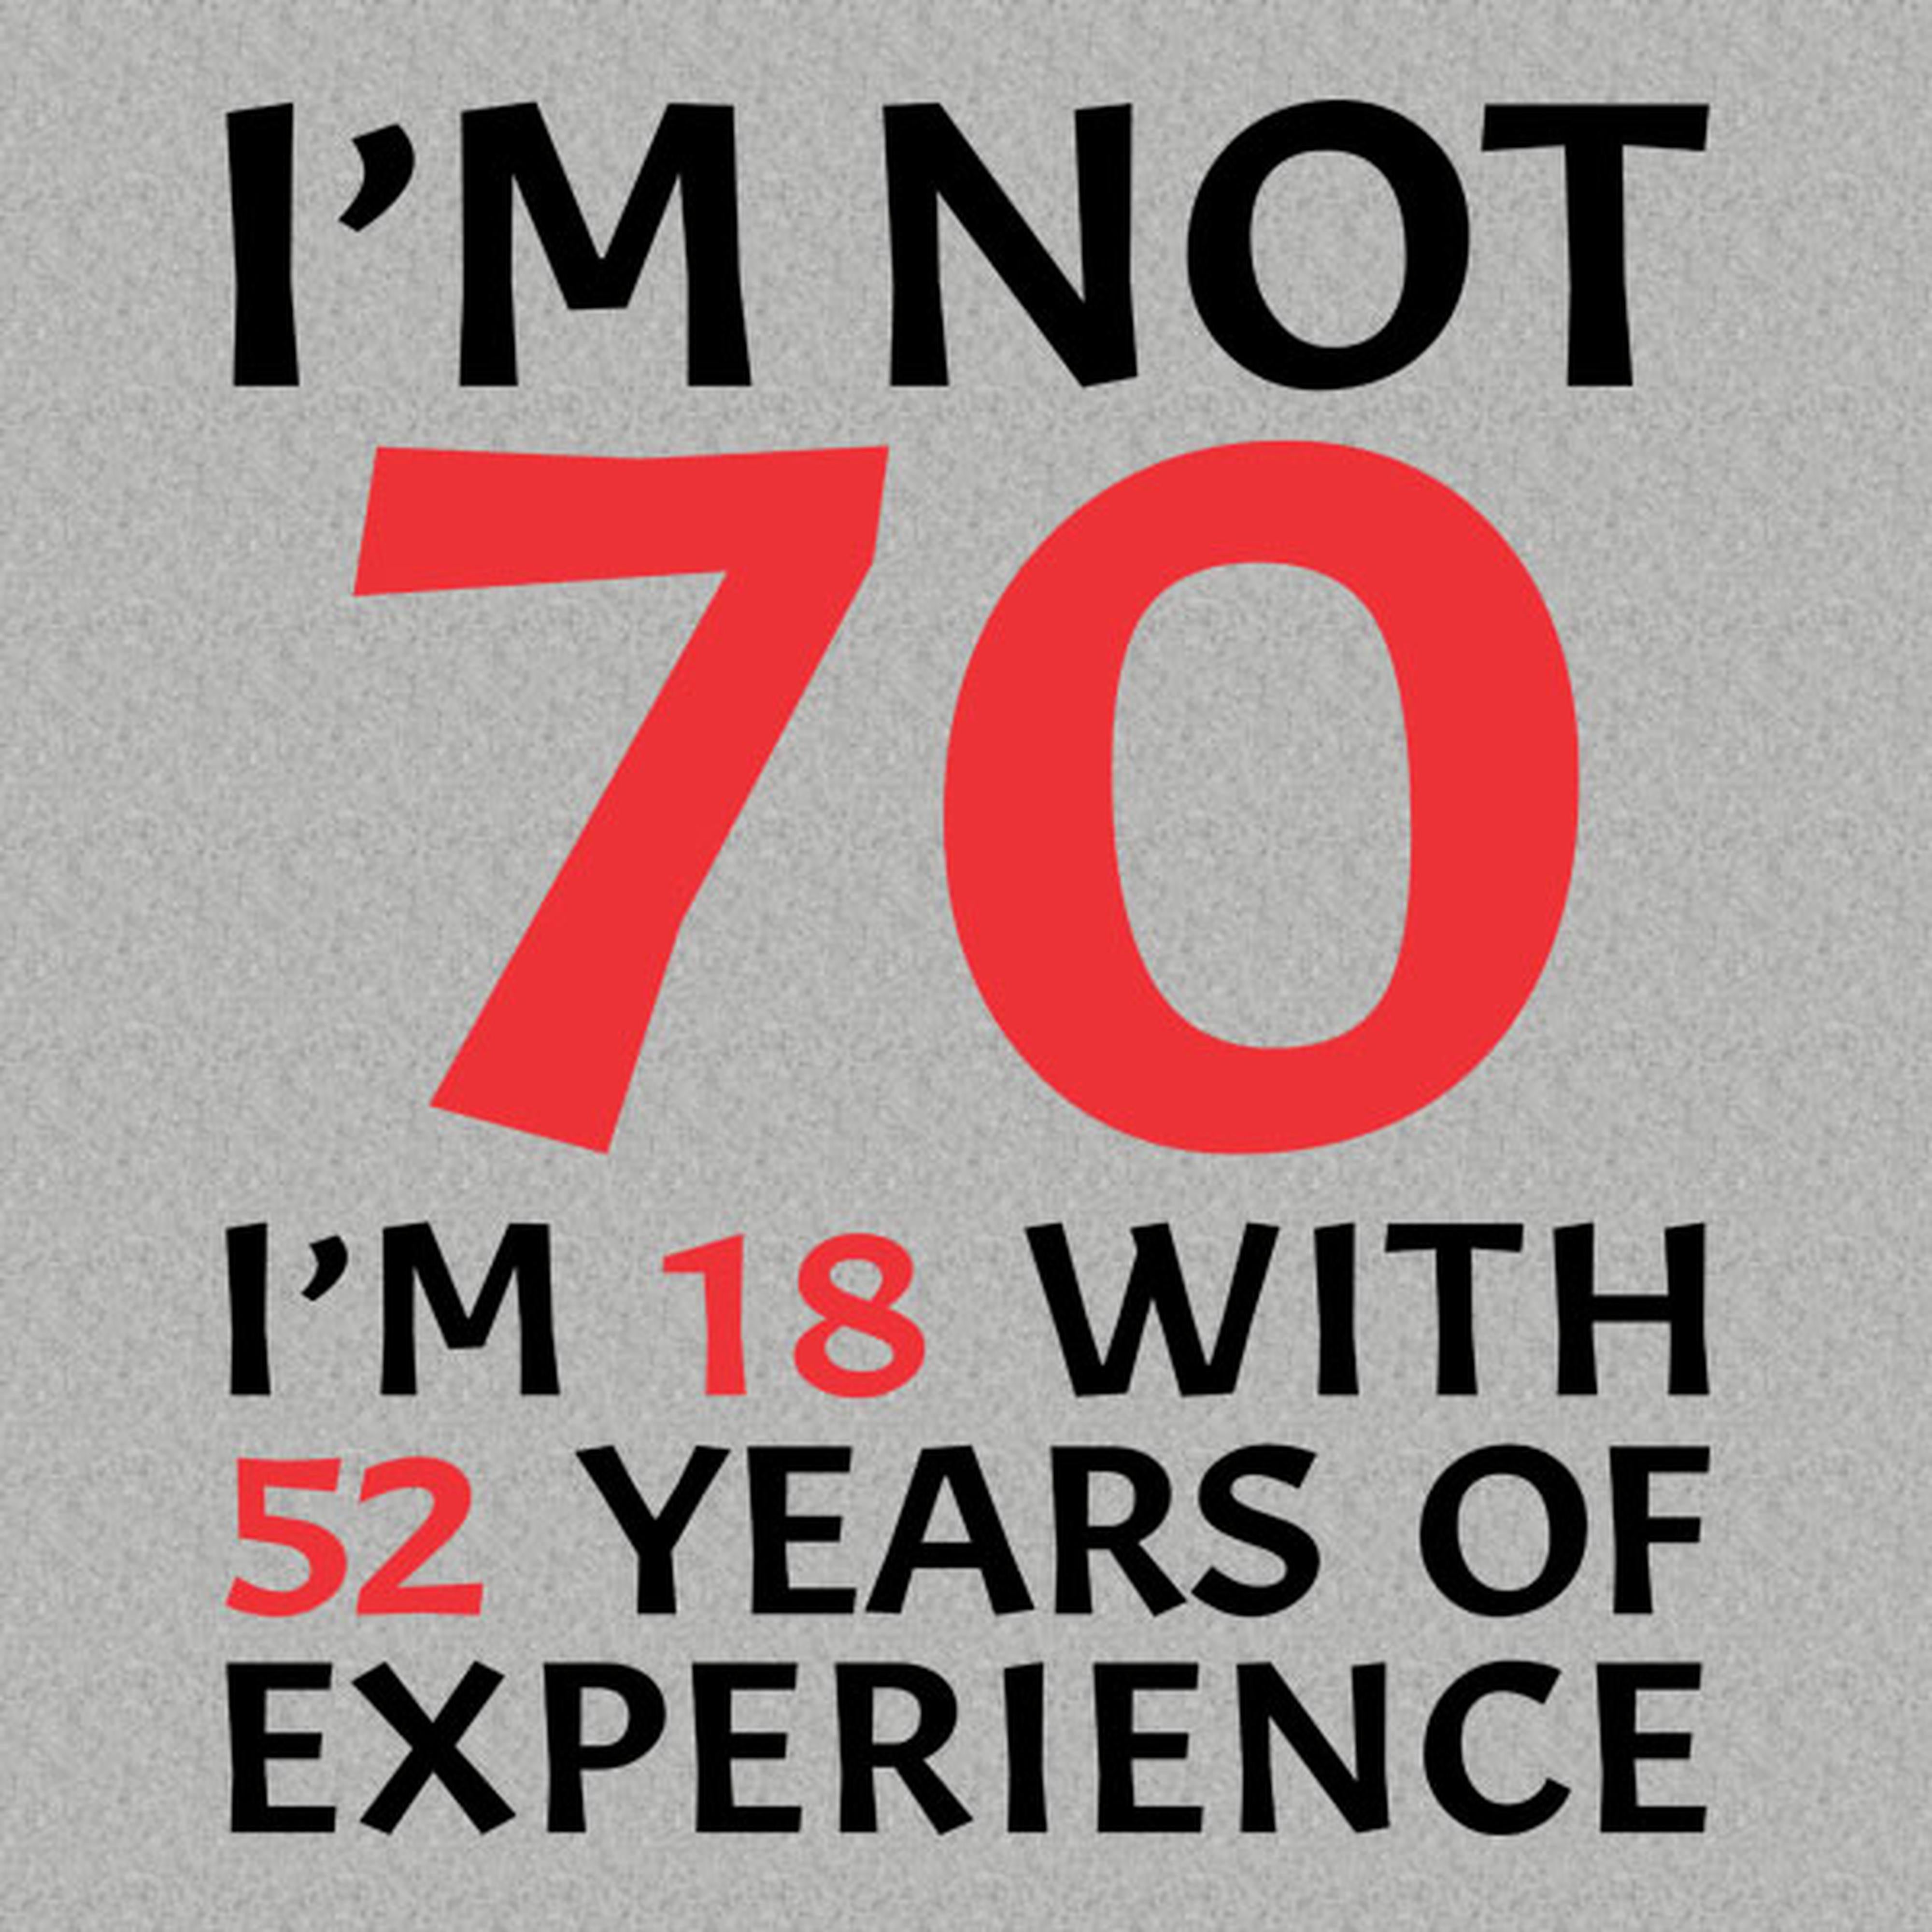 I am not 70 - T-shirt